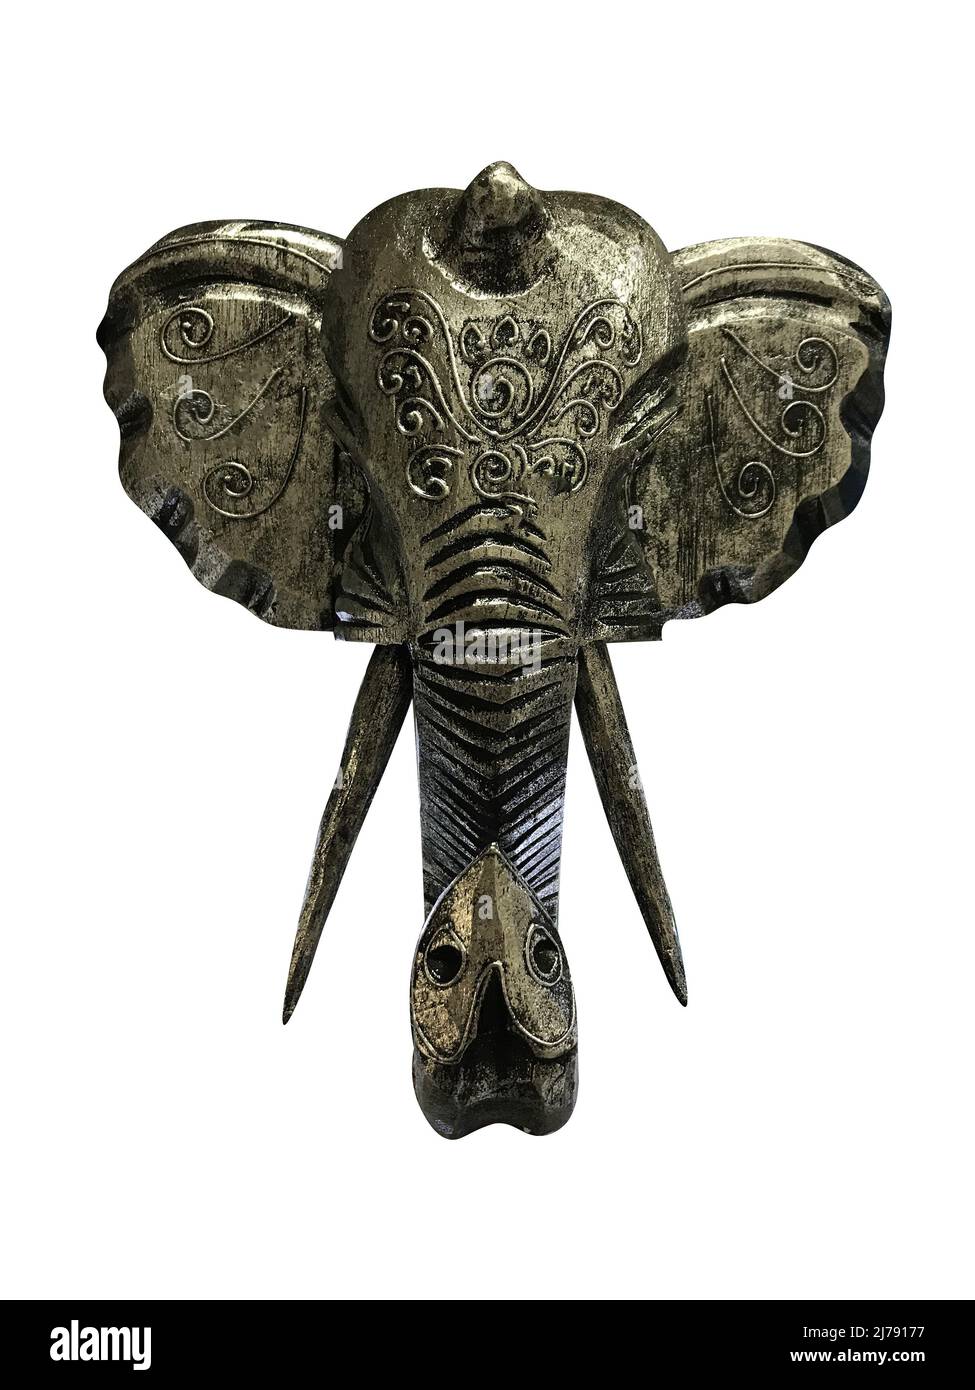 Tête de figurine d'un éléphant indien avec des motifs isolés sur un fond blanc. Photo de haute qualité Banque D'Images